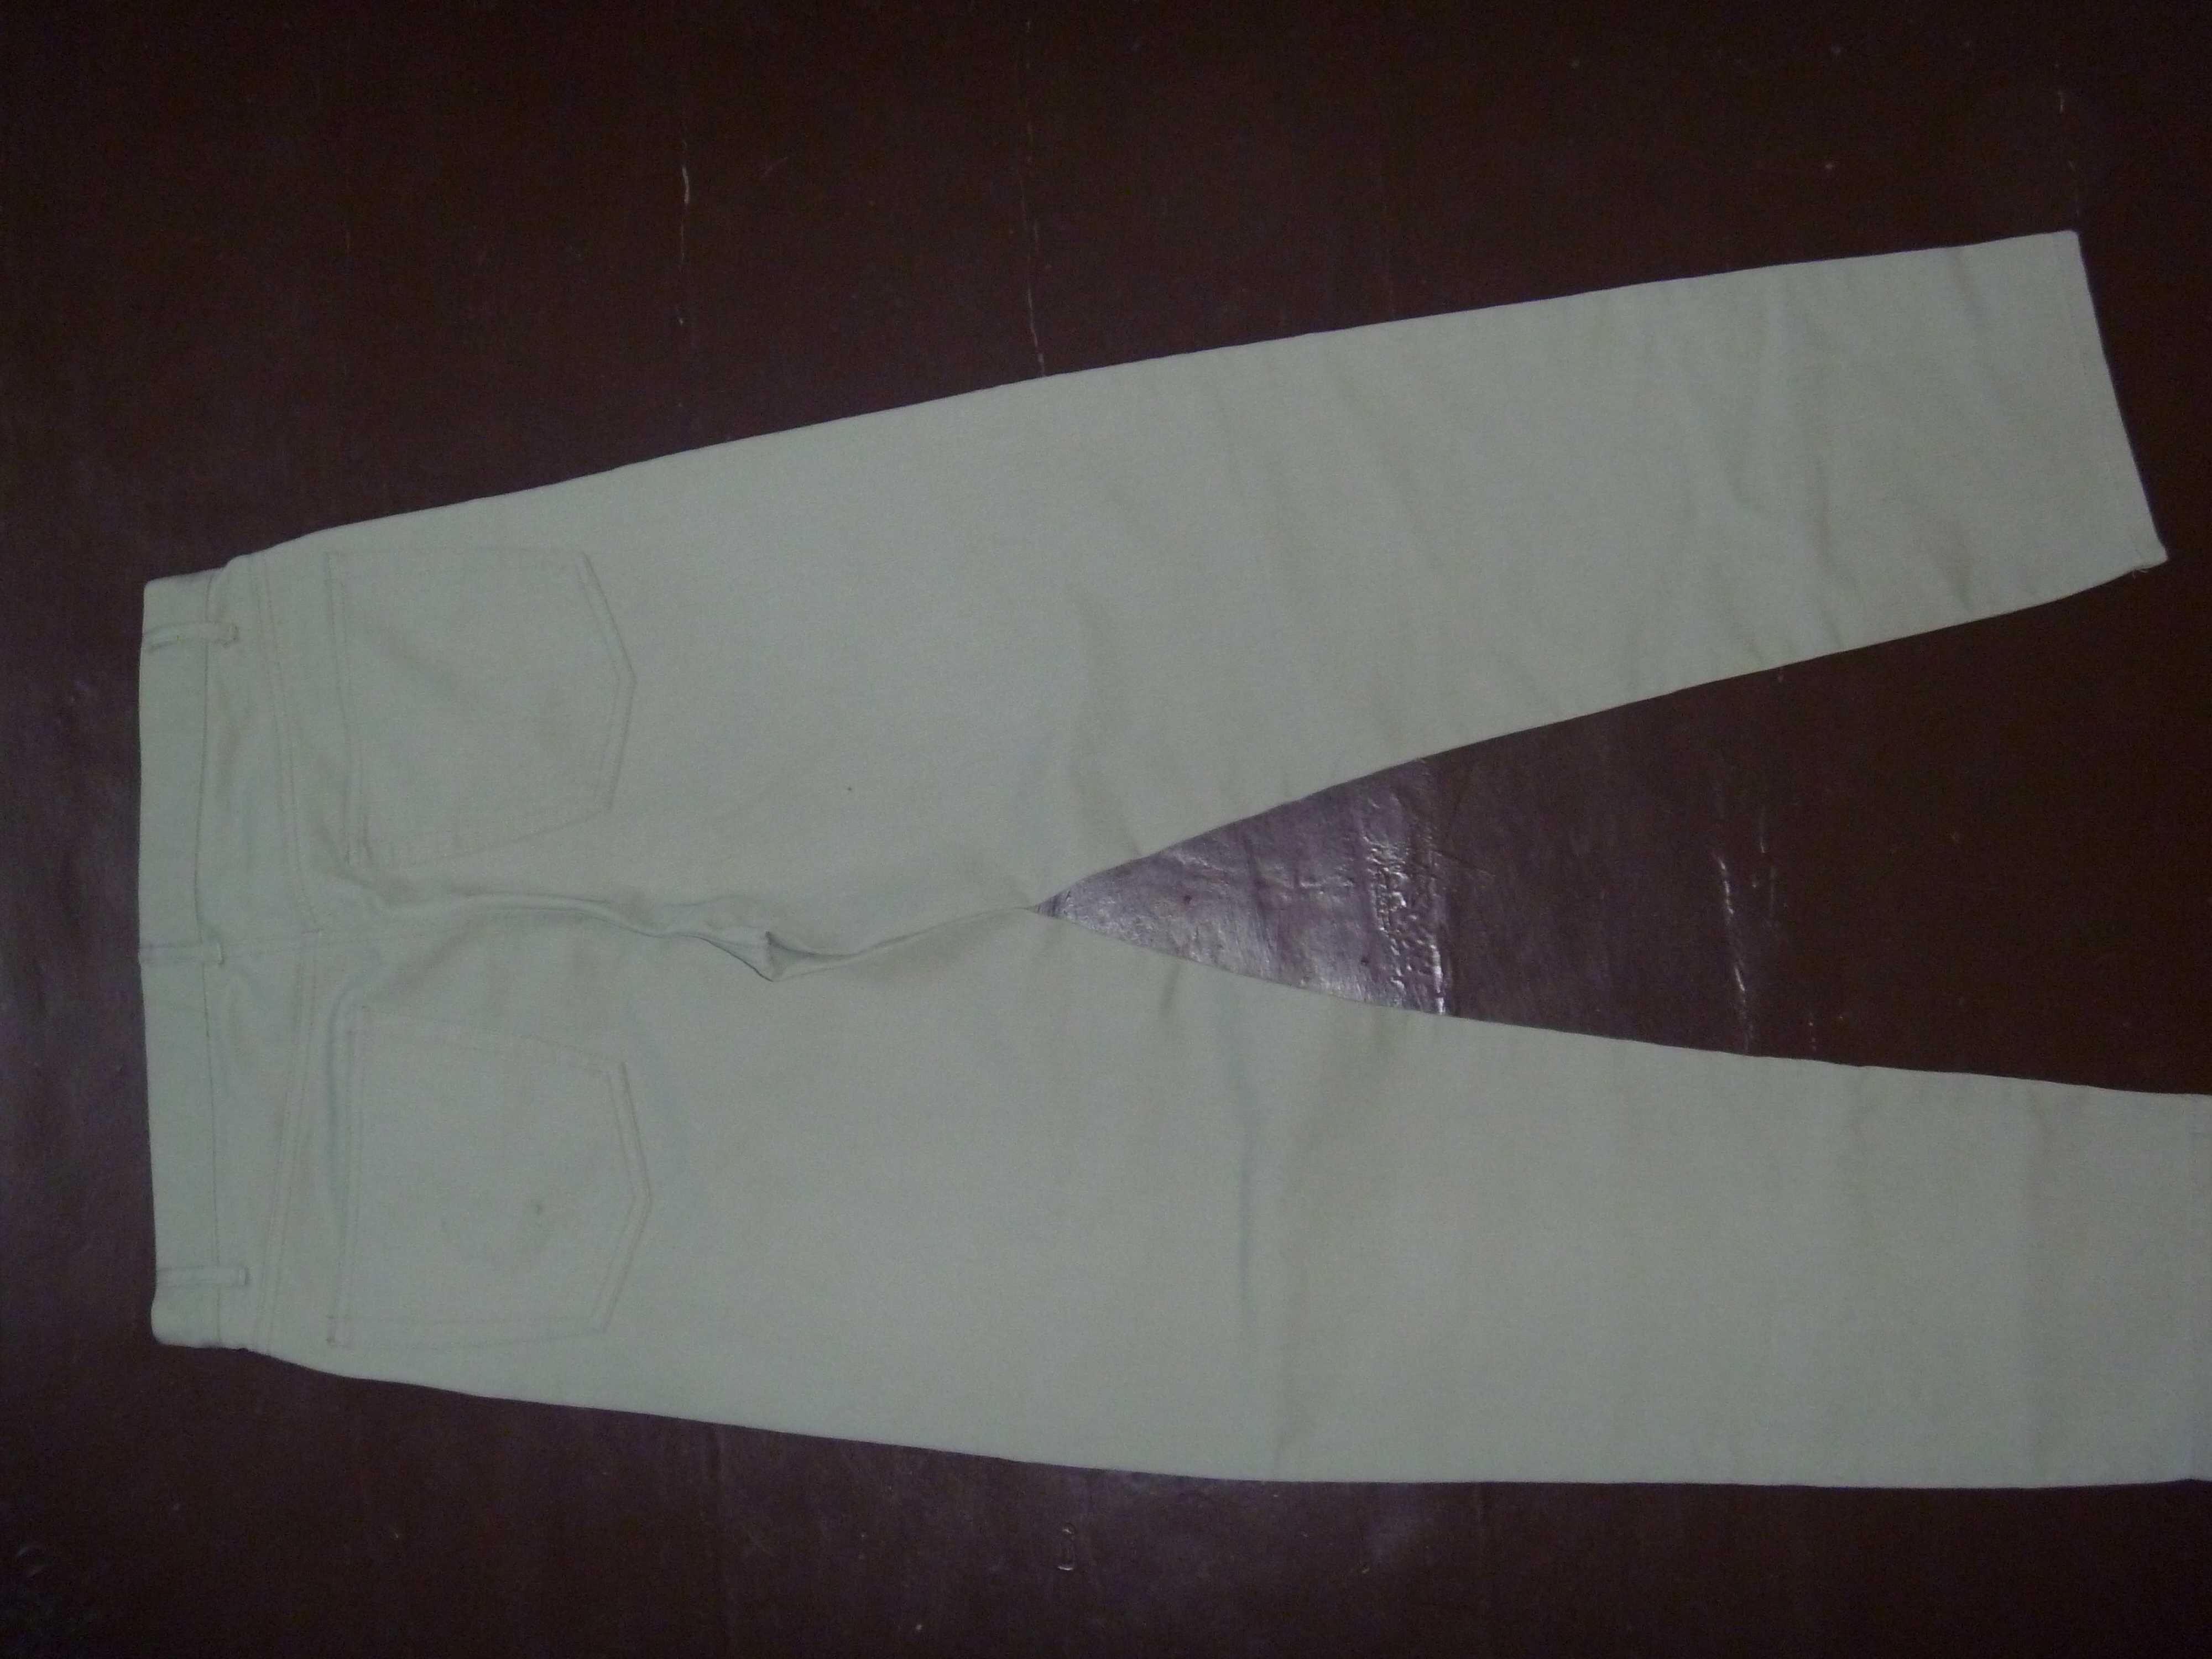 Мужские штаны/брюки CAPERPOINT. Размеры в объявлении.